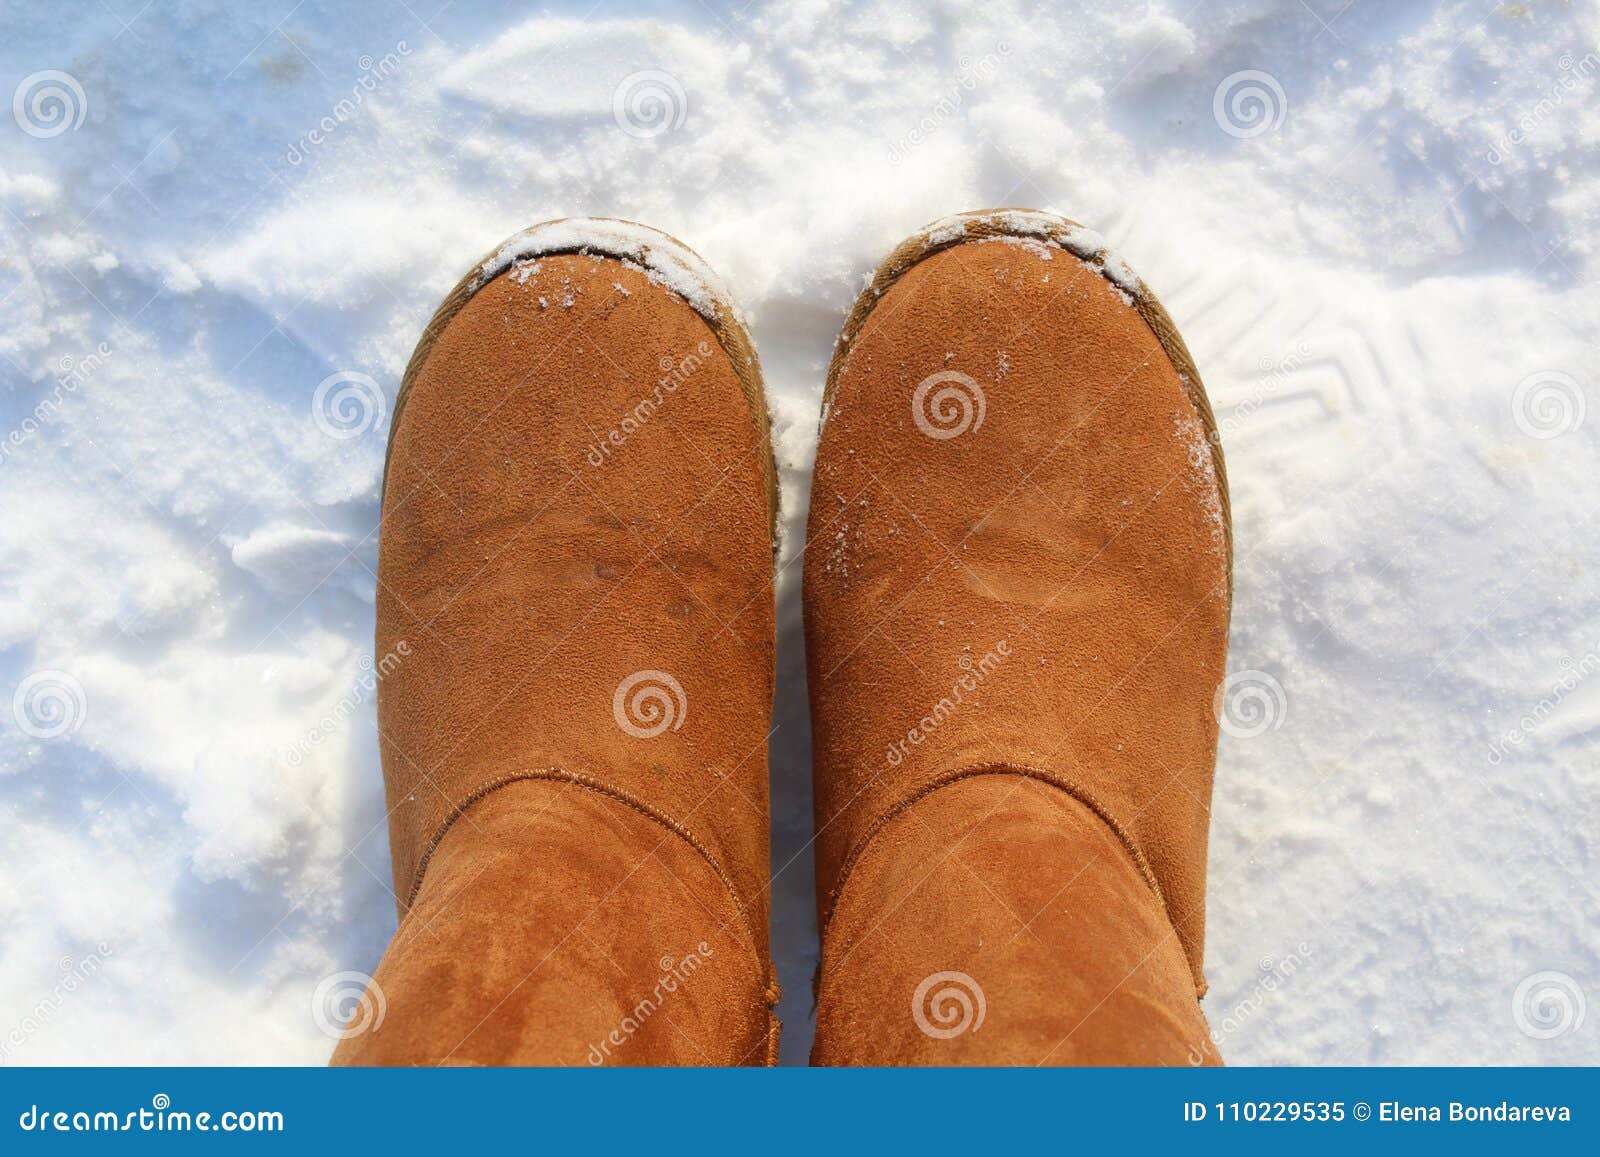 Patea Botas Calientes Del Ugg Invierno En La Nieve Imagen de archivo - Imagen de conveniente, requiere: 110229535